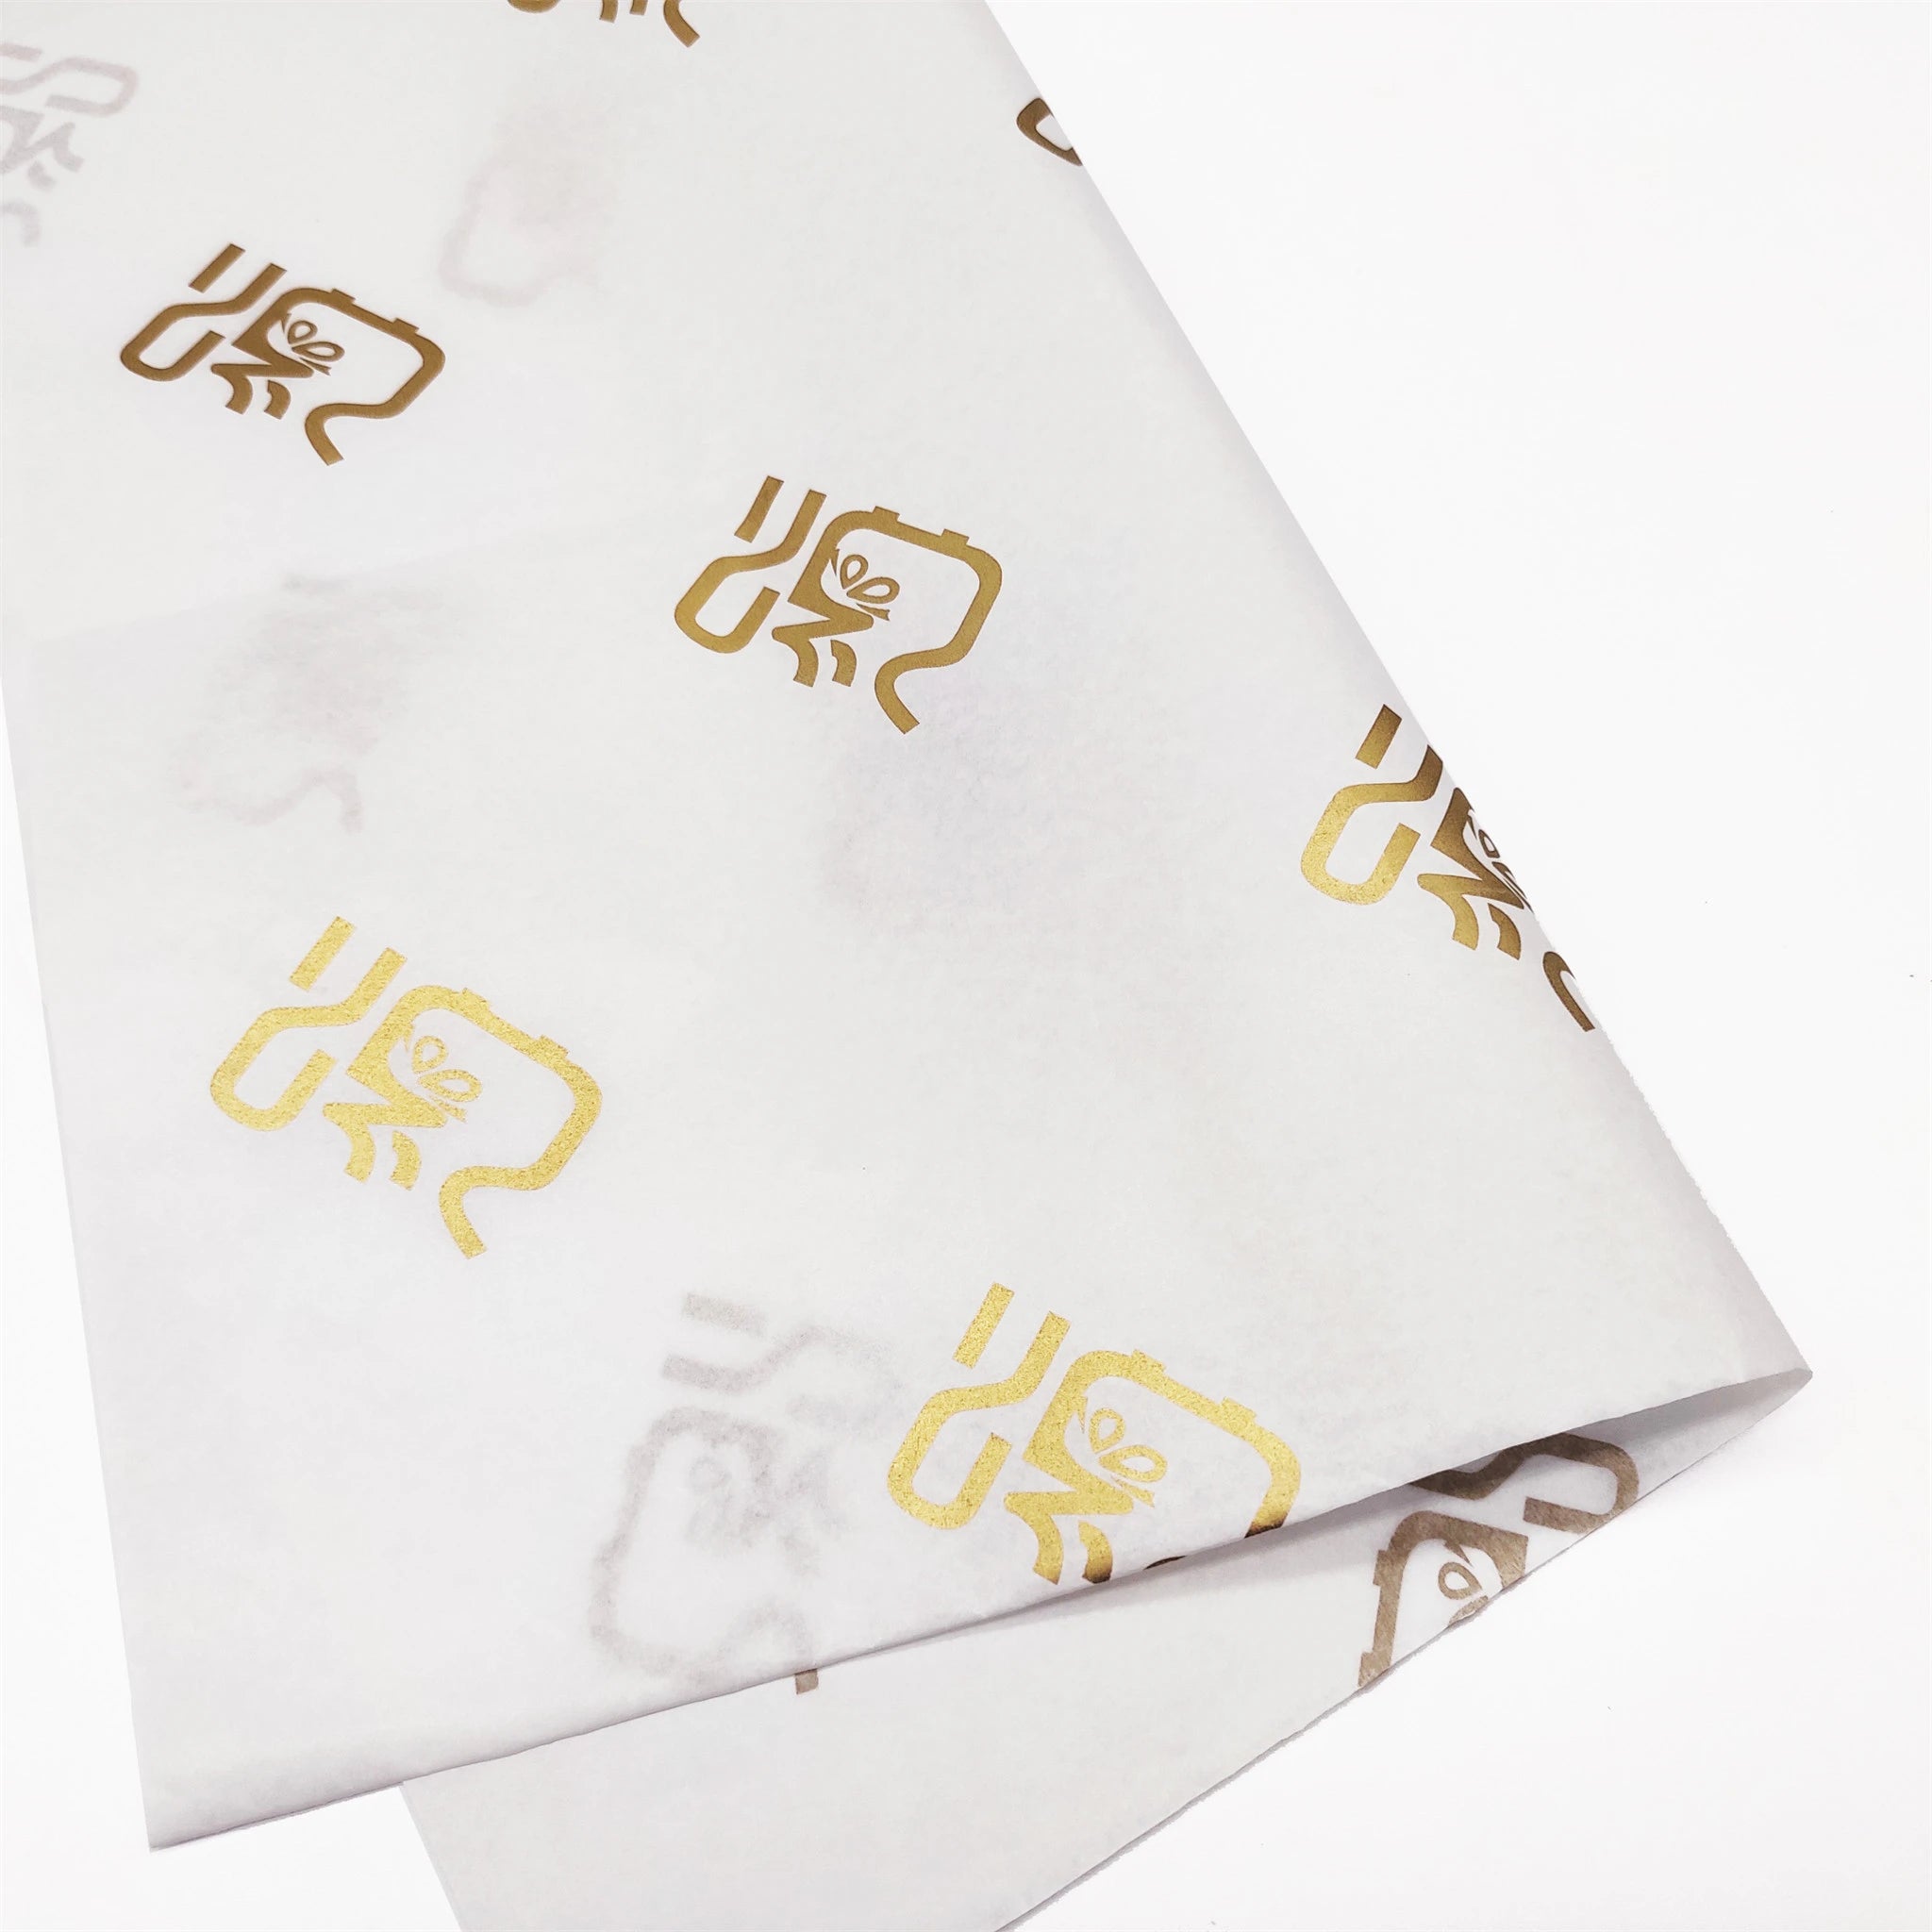 White Tissue Paper 100 Sheets 50cm x 75cm